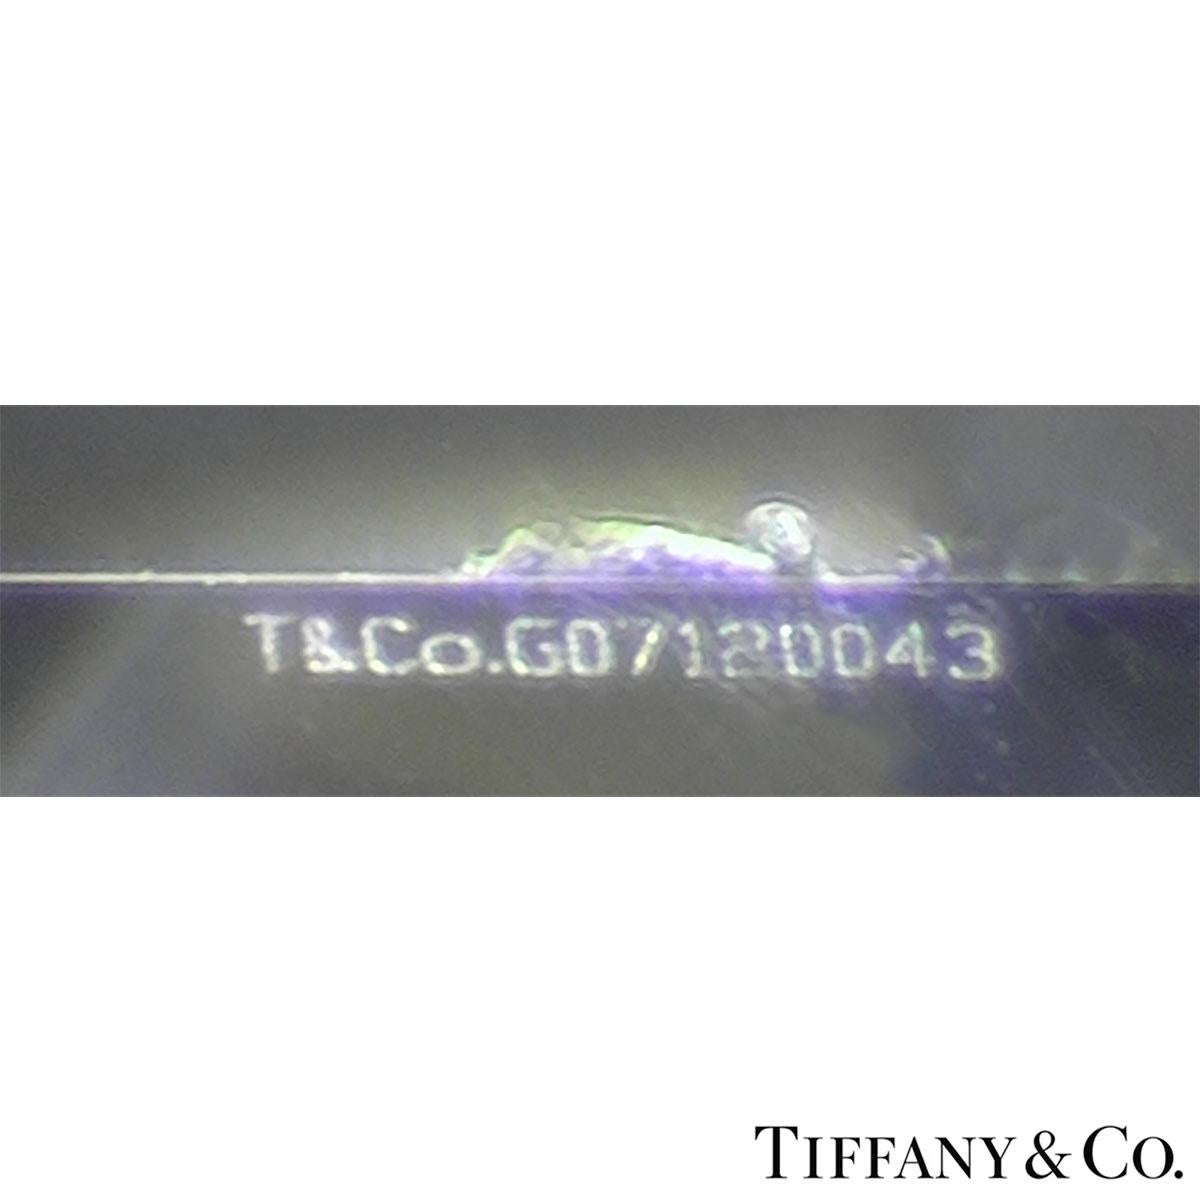 Tiffany & Co. Platinum Diamond Setting Ring 1.50 Carat 1